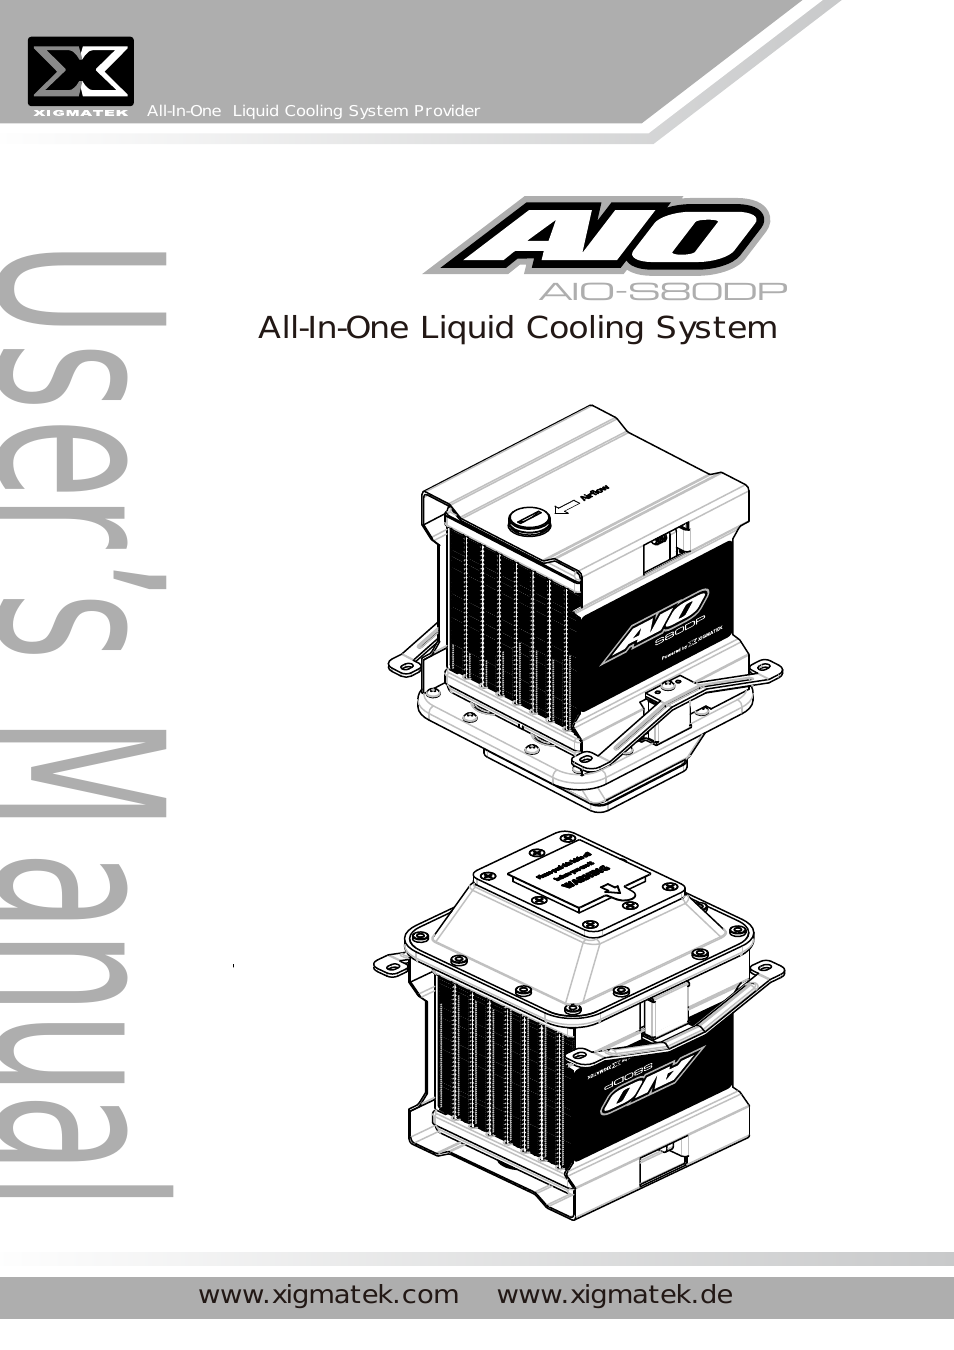 AIO-S80DP